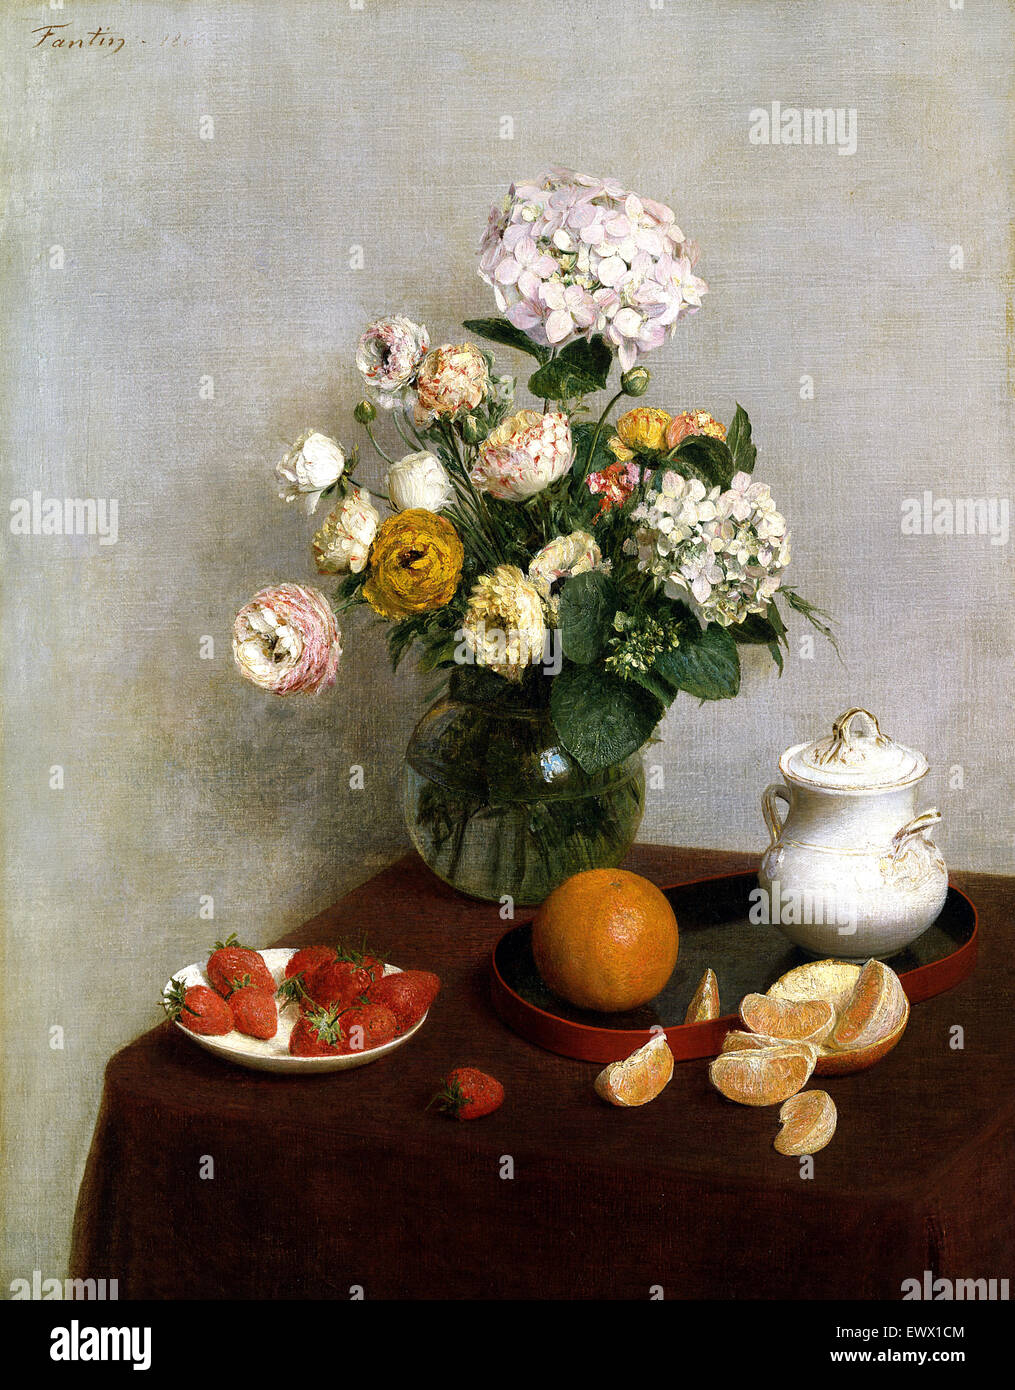 Henri Fantin-Latour, fleurs et fruits 1866 Huile sur toile. Toledo Museum of Art, Ohio, USA. Banque D'Images